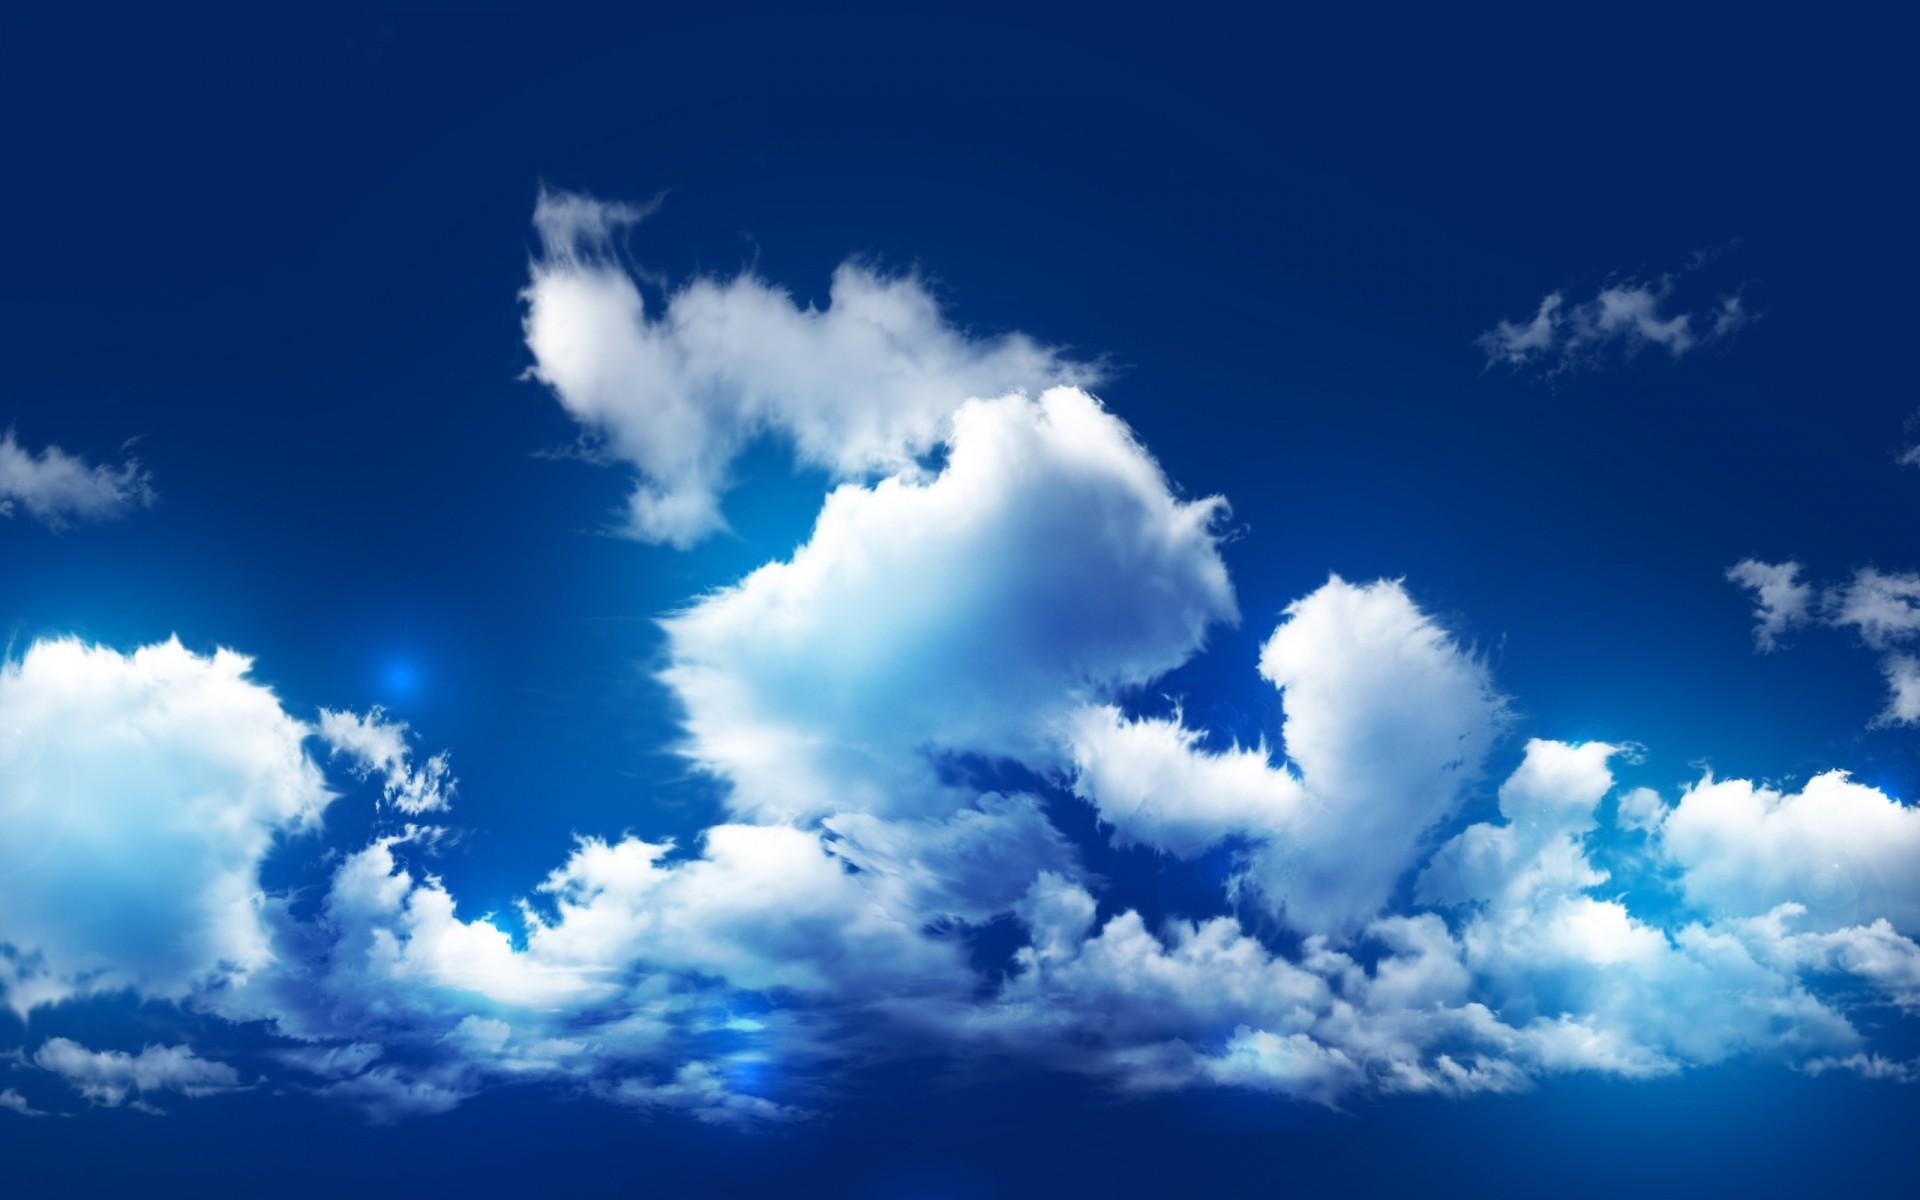 33 450 358 рез. по запросу «Голубое небо» — изображения, стоковые  фотографии, трехмерные объекты и векторная графика | Shutterstock